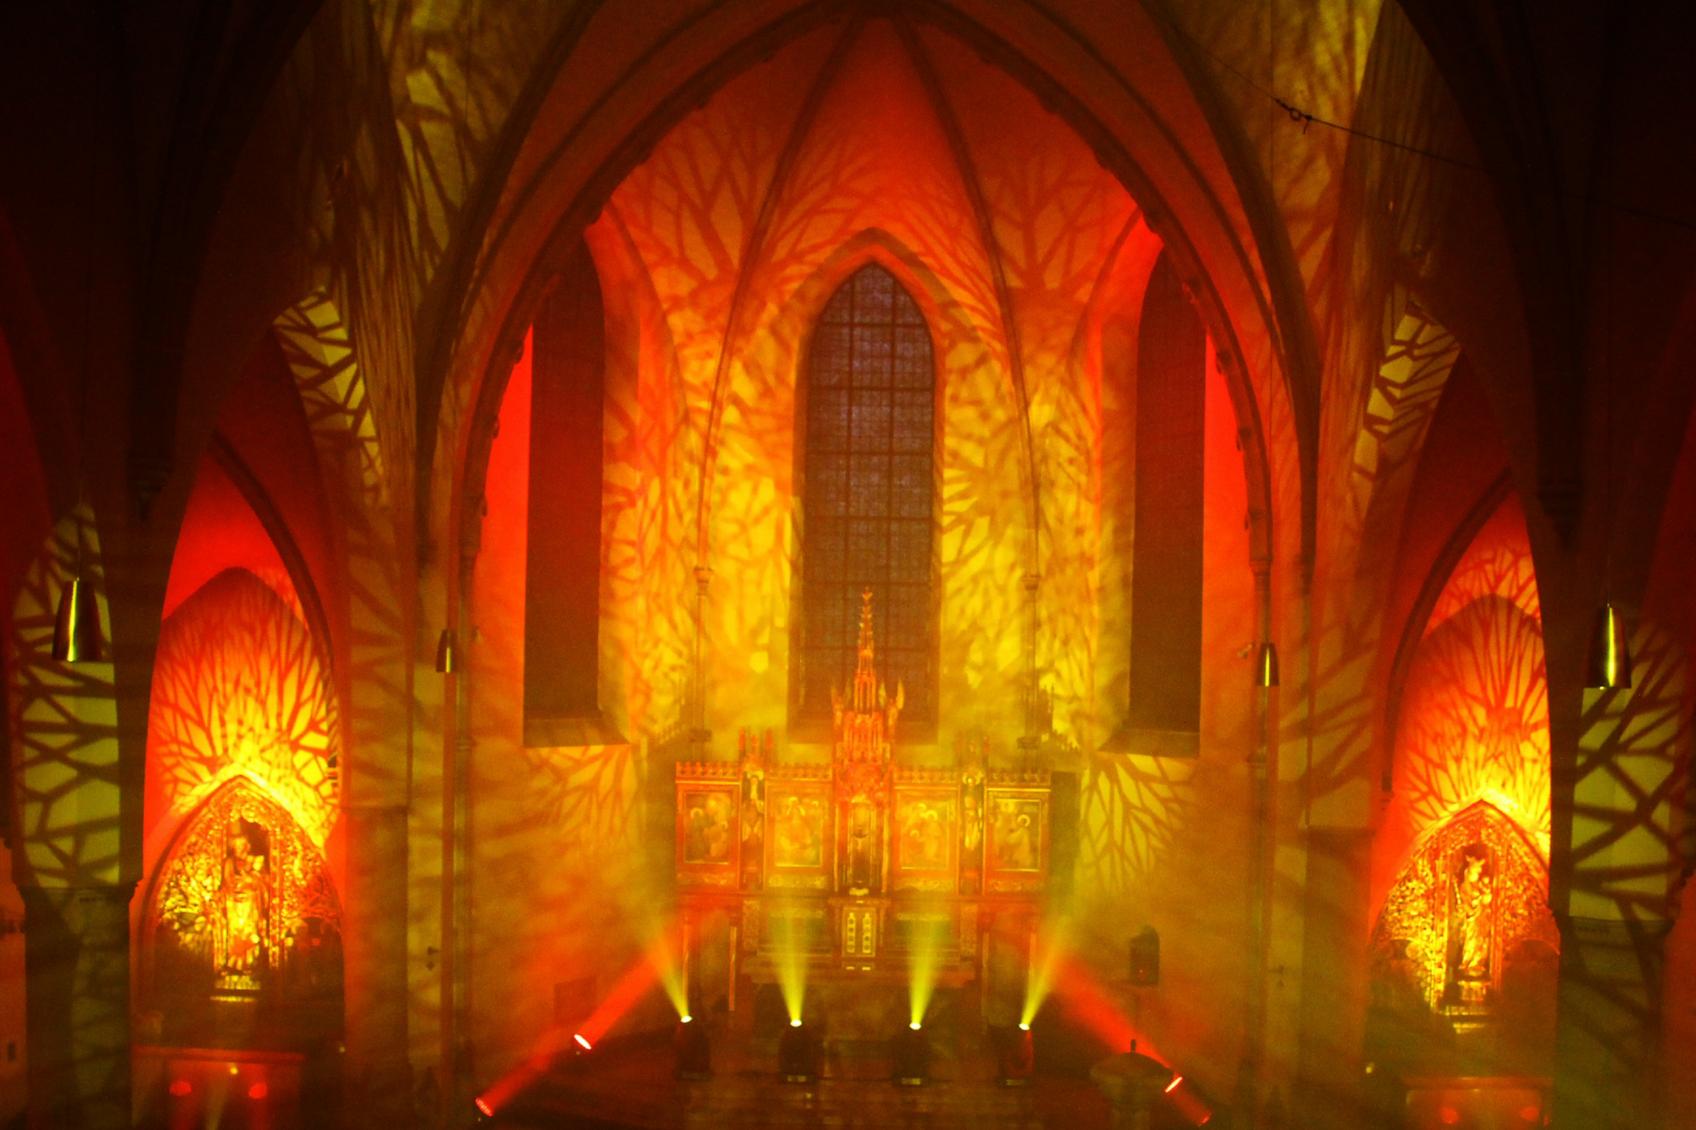 Illumination (c) Bistum Mainz